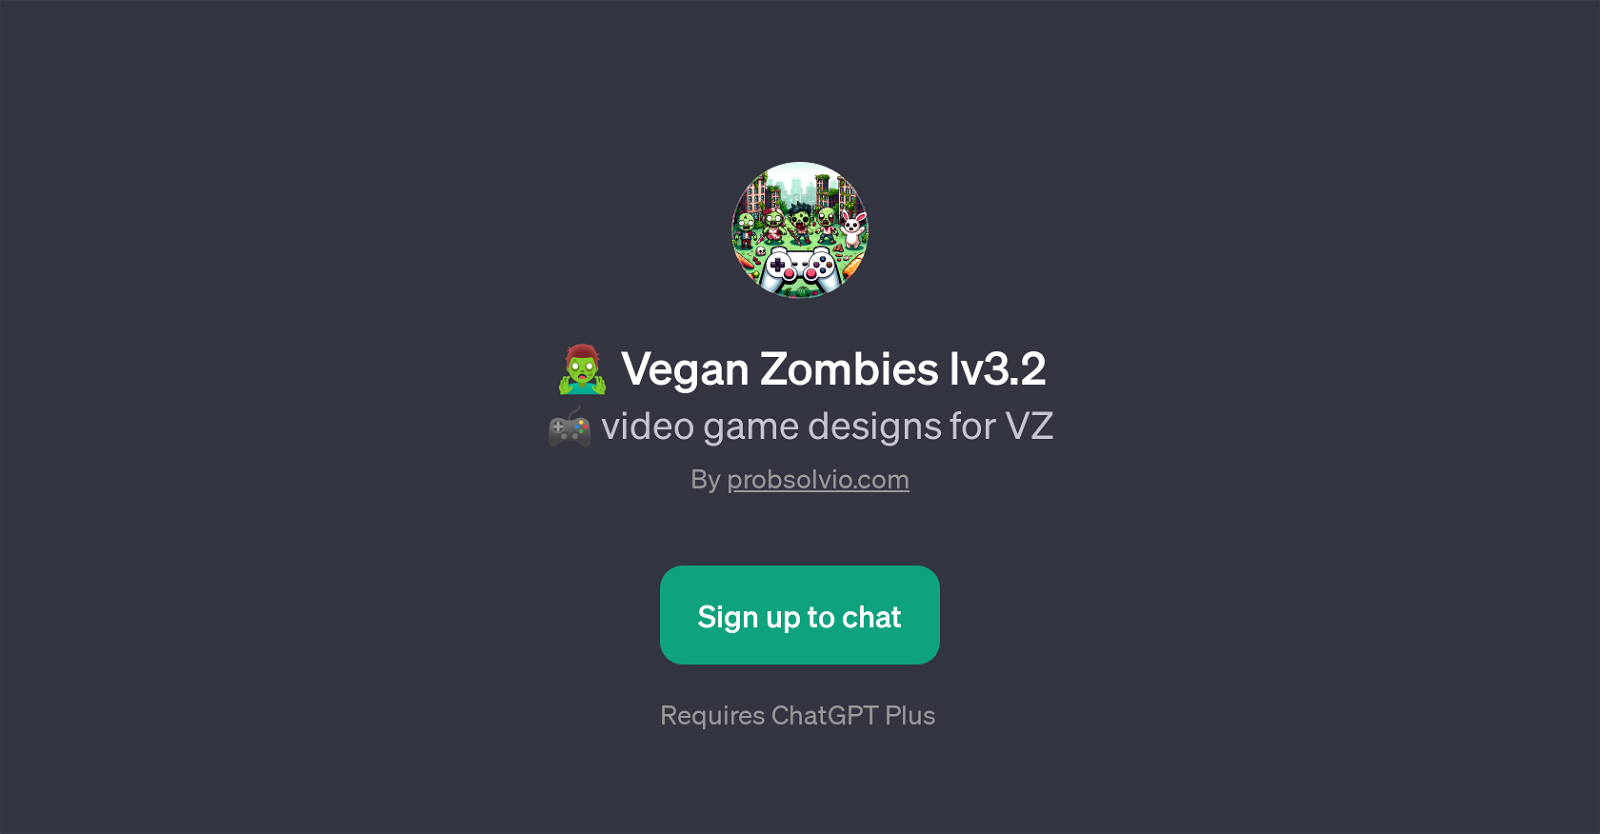 Vegan Zombies lv3.2 website